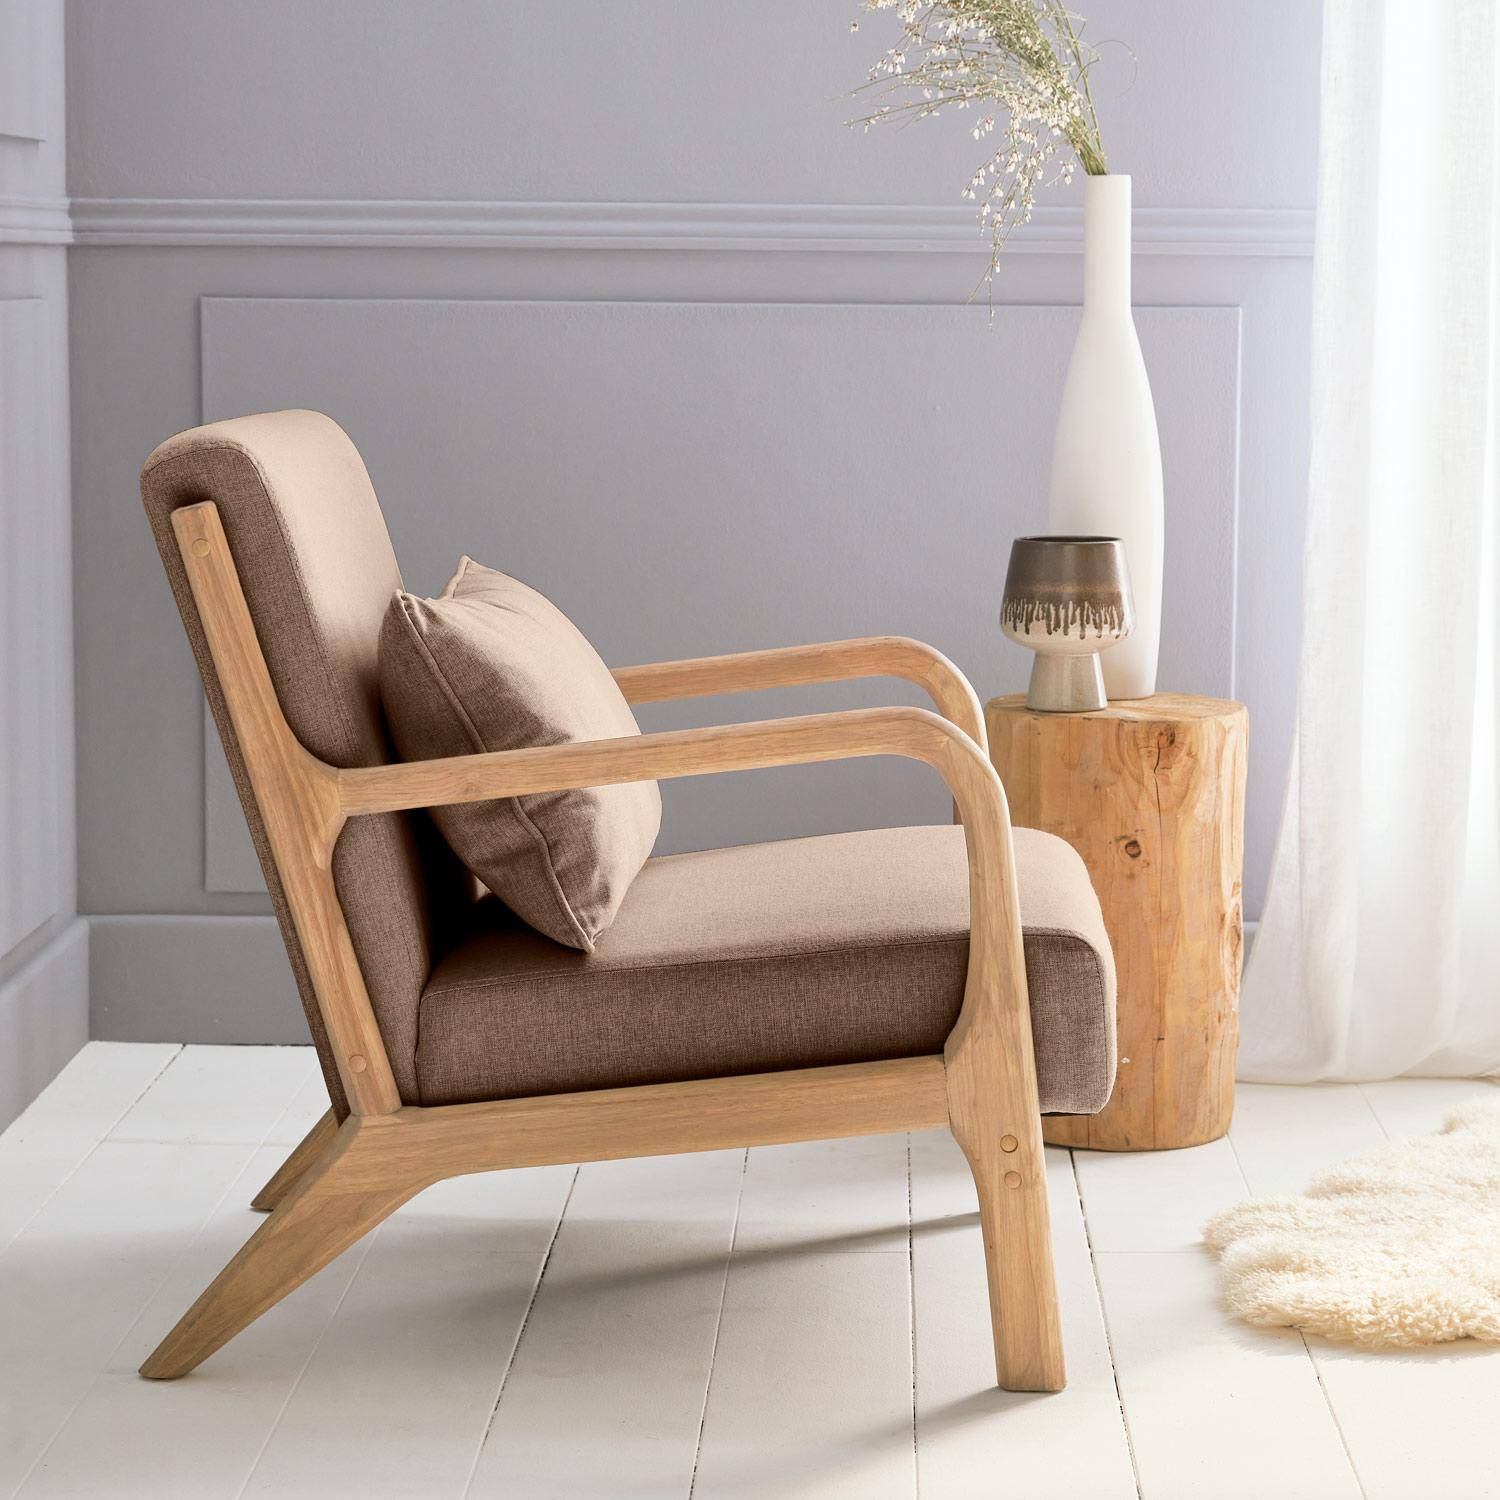 Sillón de diseño marrón en madera y tela, 1 asiento recto fijo, patas de compás escandinavas, armazón de madera maciza, asiento cómodo,sweeek,Photo3